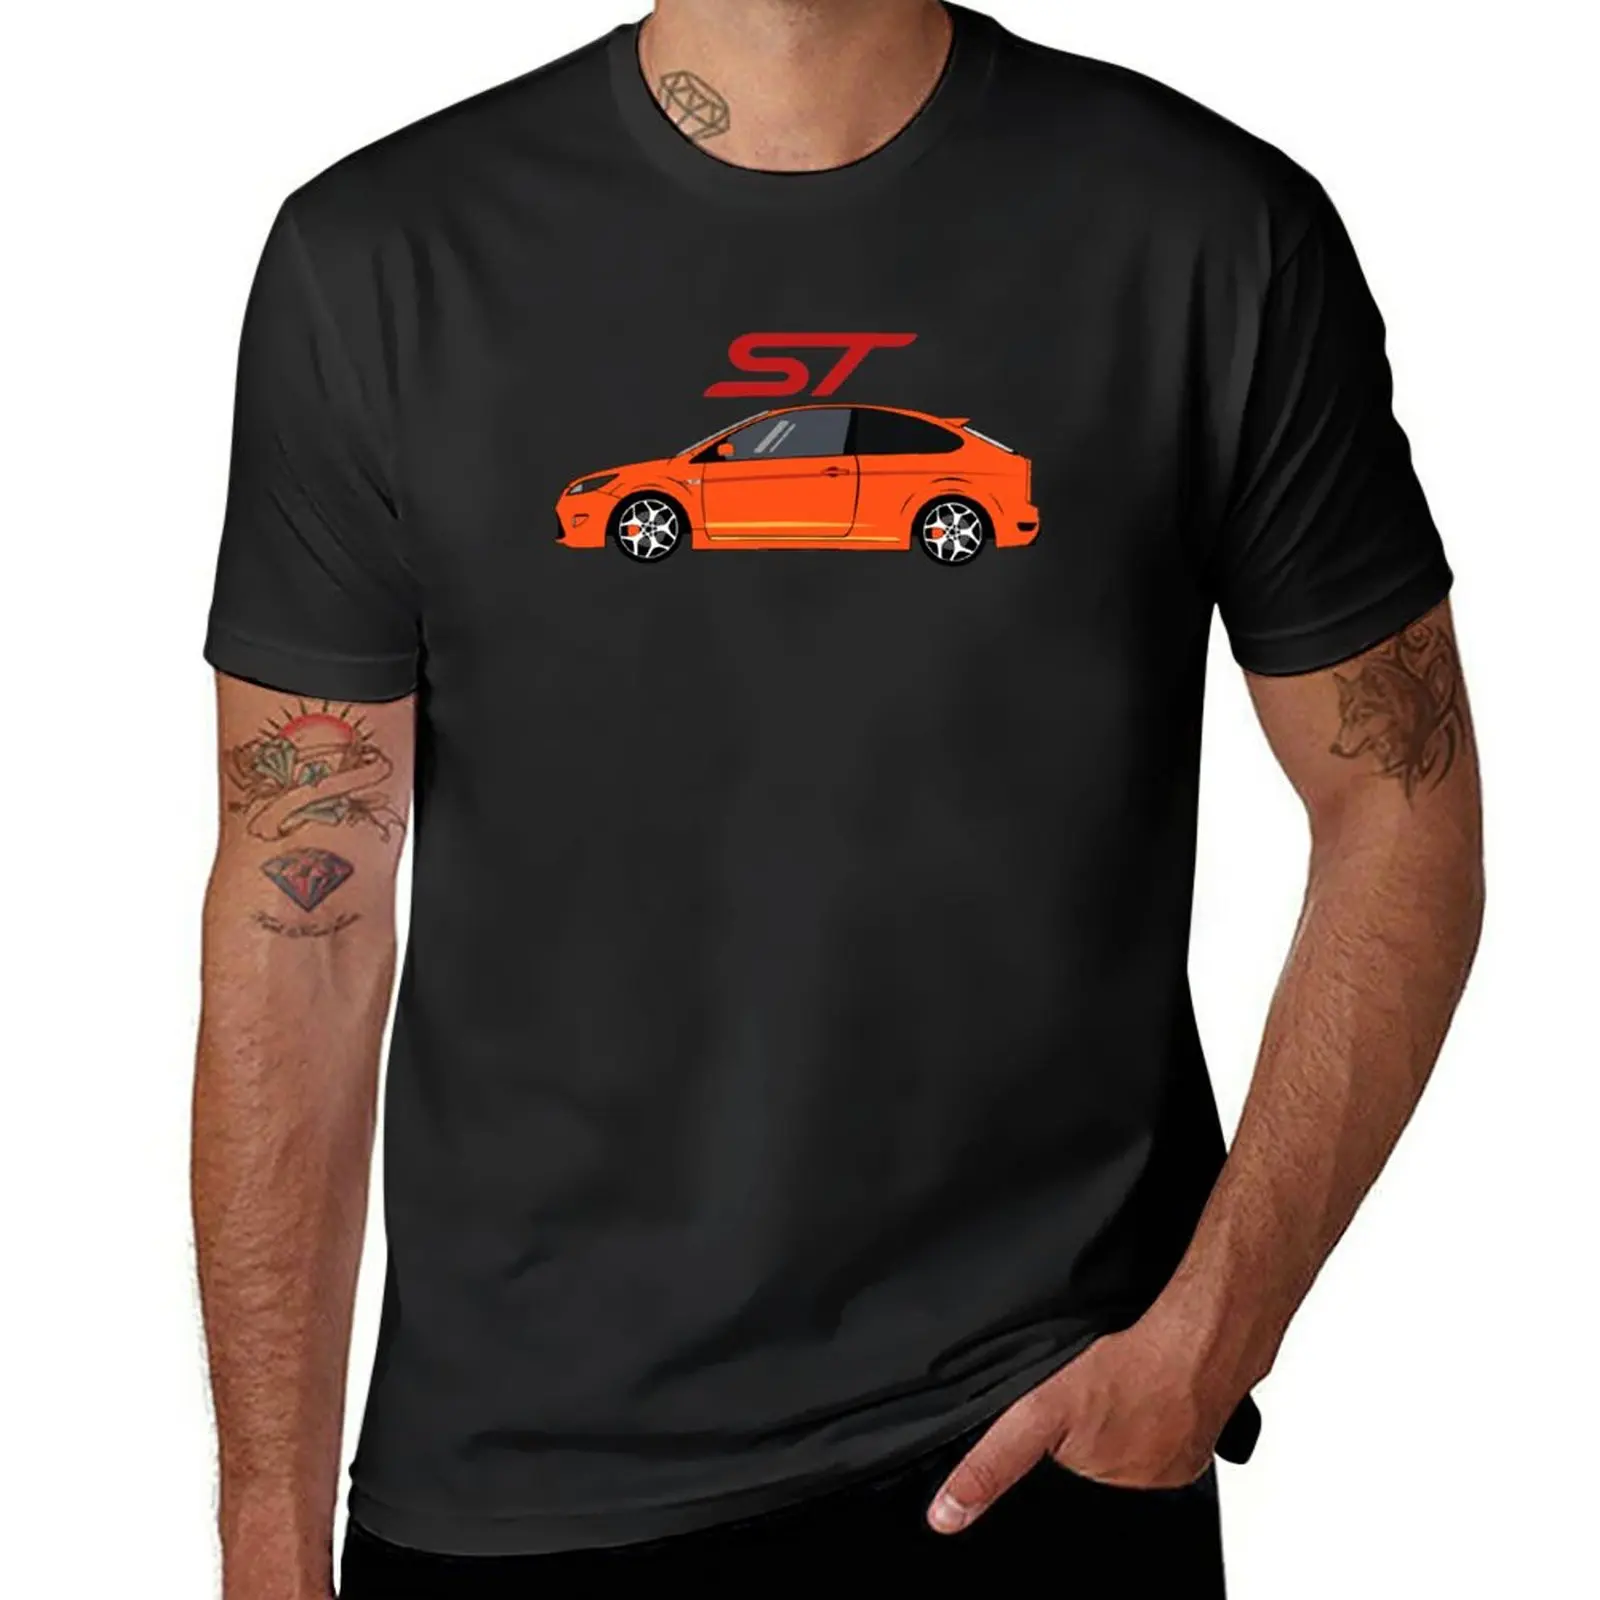 

Новая оранжевая футболка Focus mk2 st, футболка на заказ, аниме футболка, тяжелые футболки для мужчин